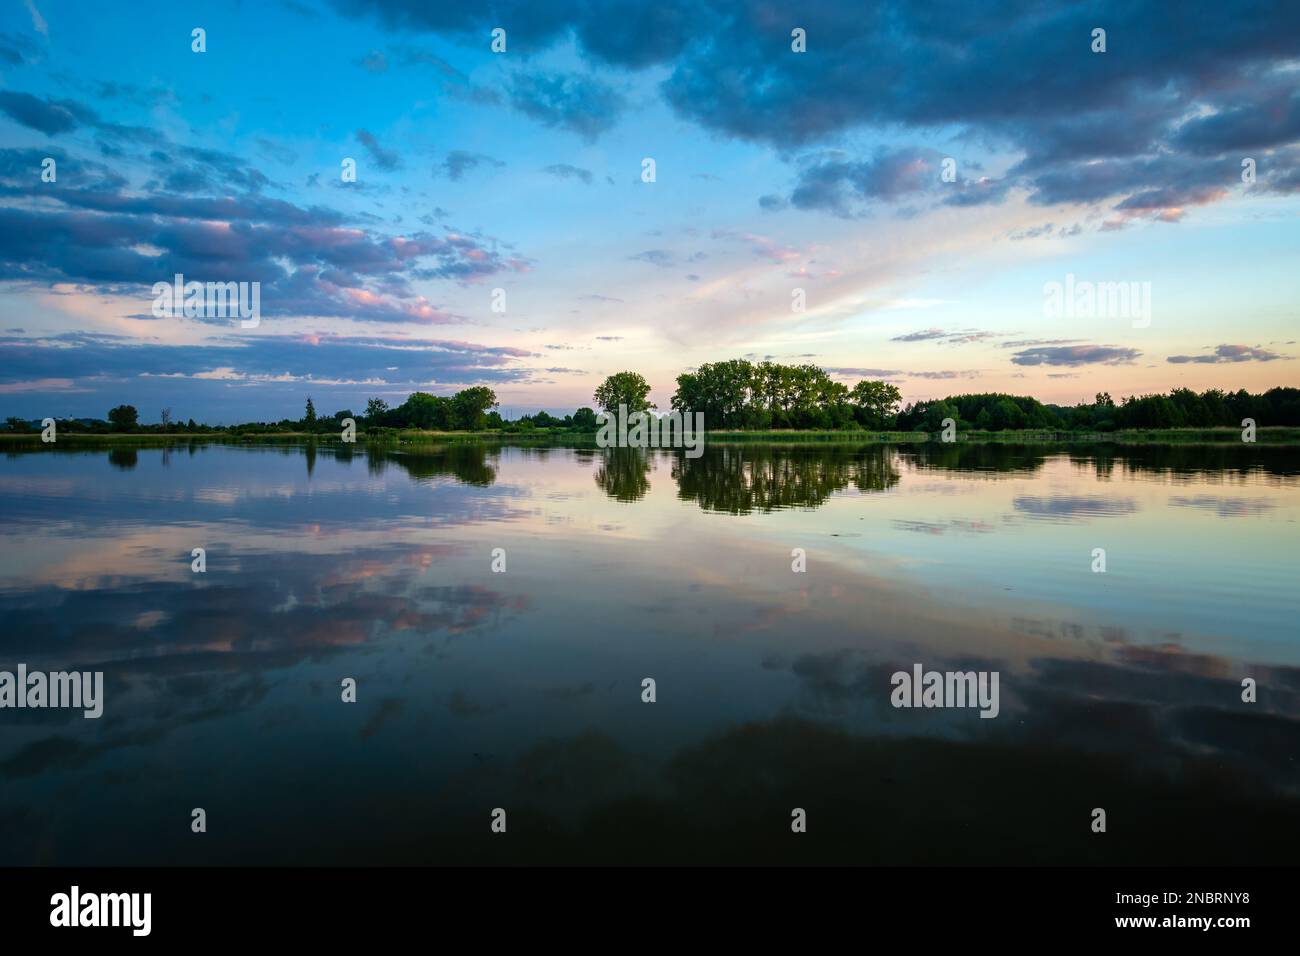 Reflexion der Abendwolken im Wasser eines ruhigen Sees, Stankow, Lubelskie, Polen Stockfoto